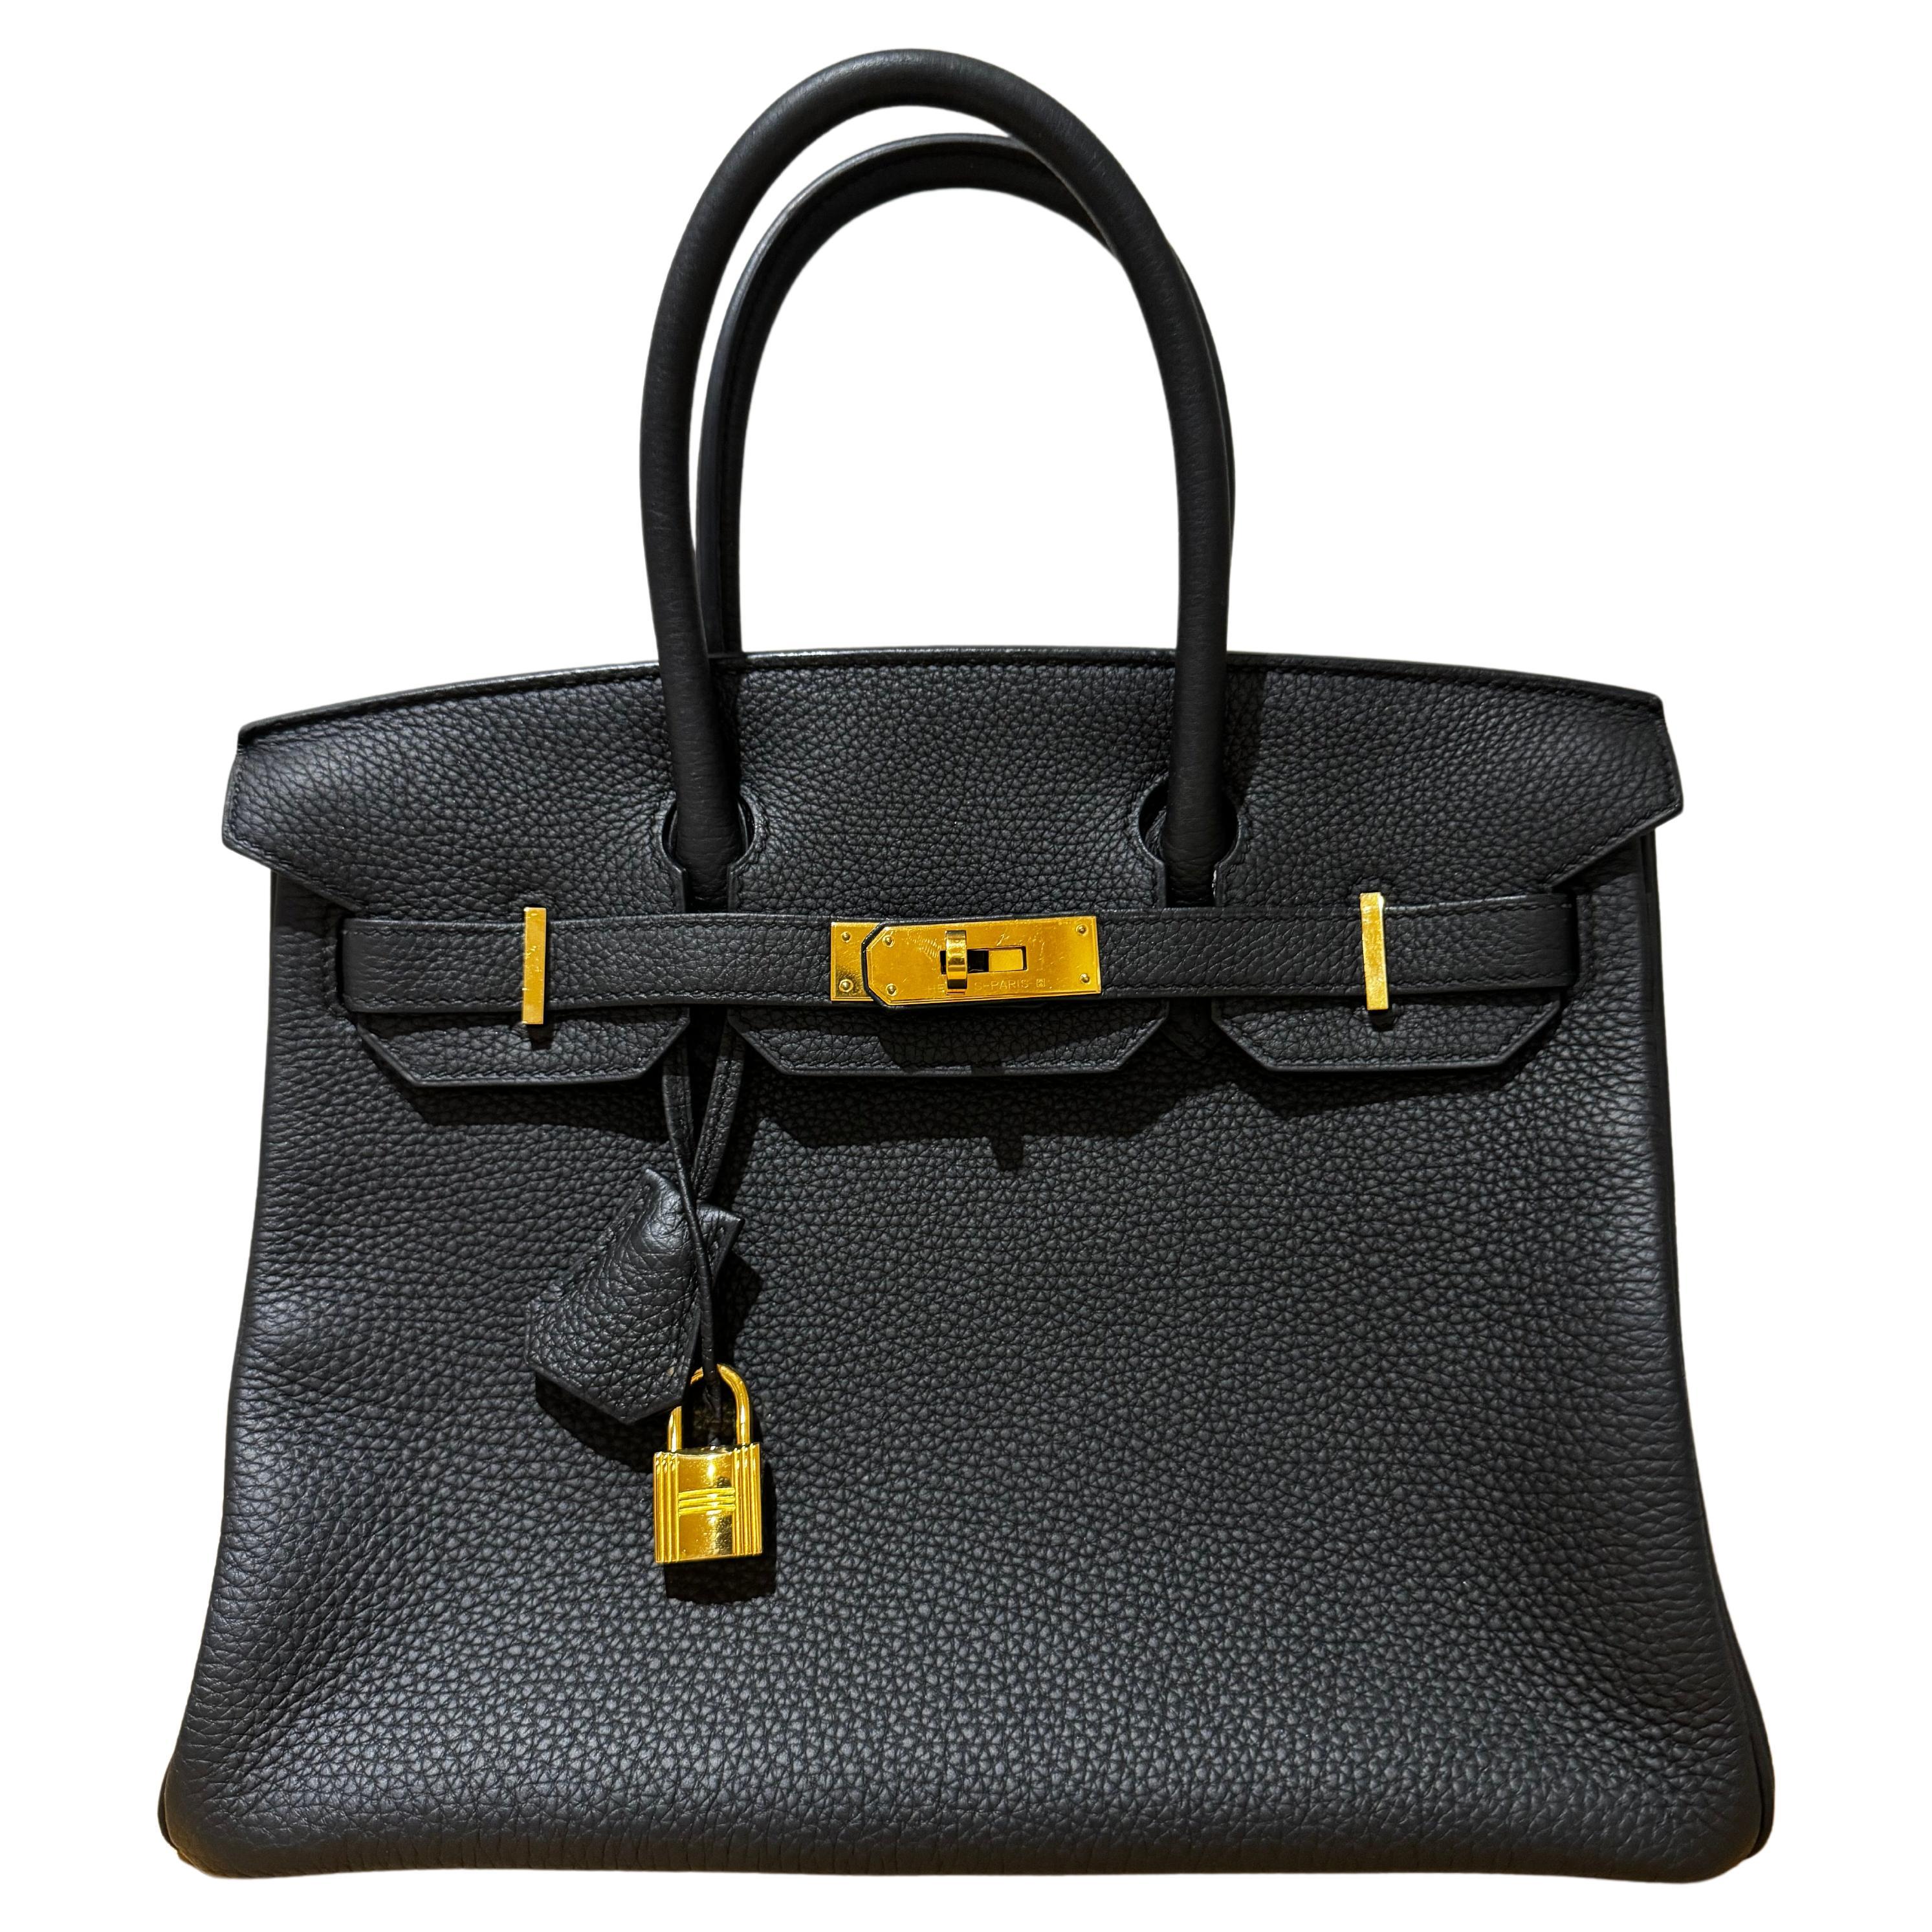 Hermes birkin 30 black togo gold hardware bag 